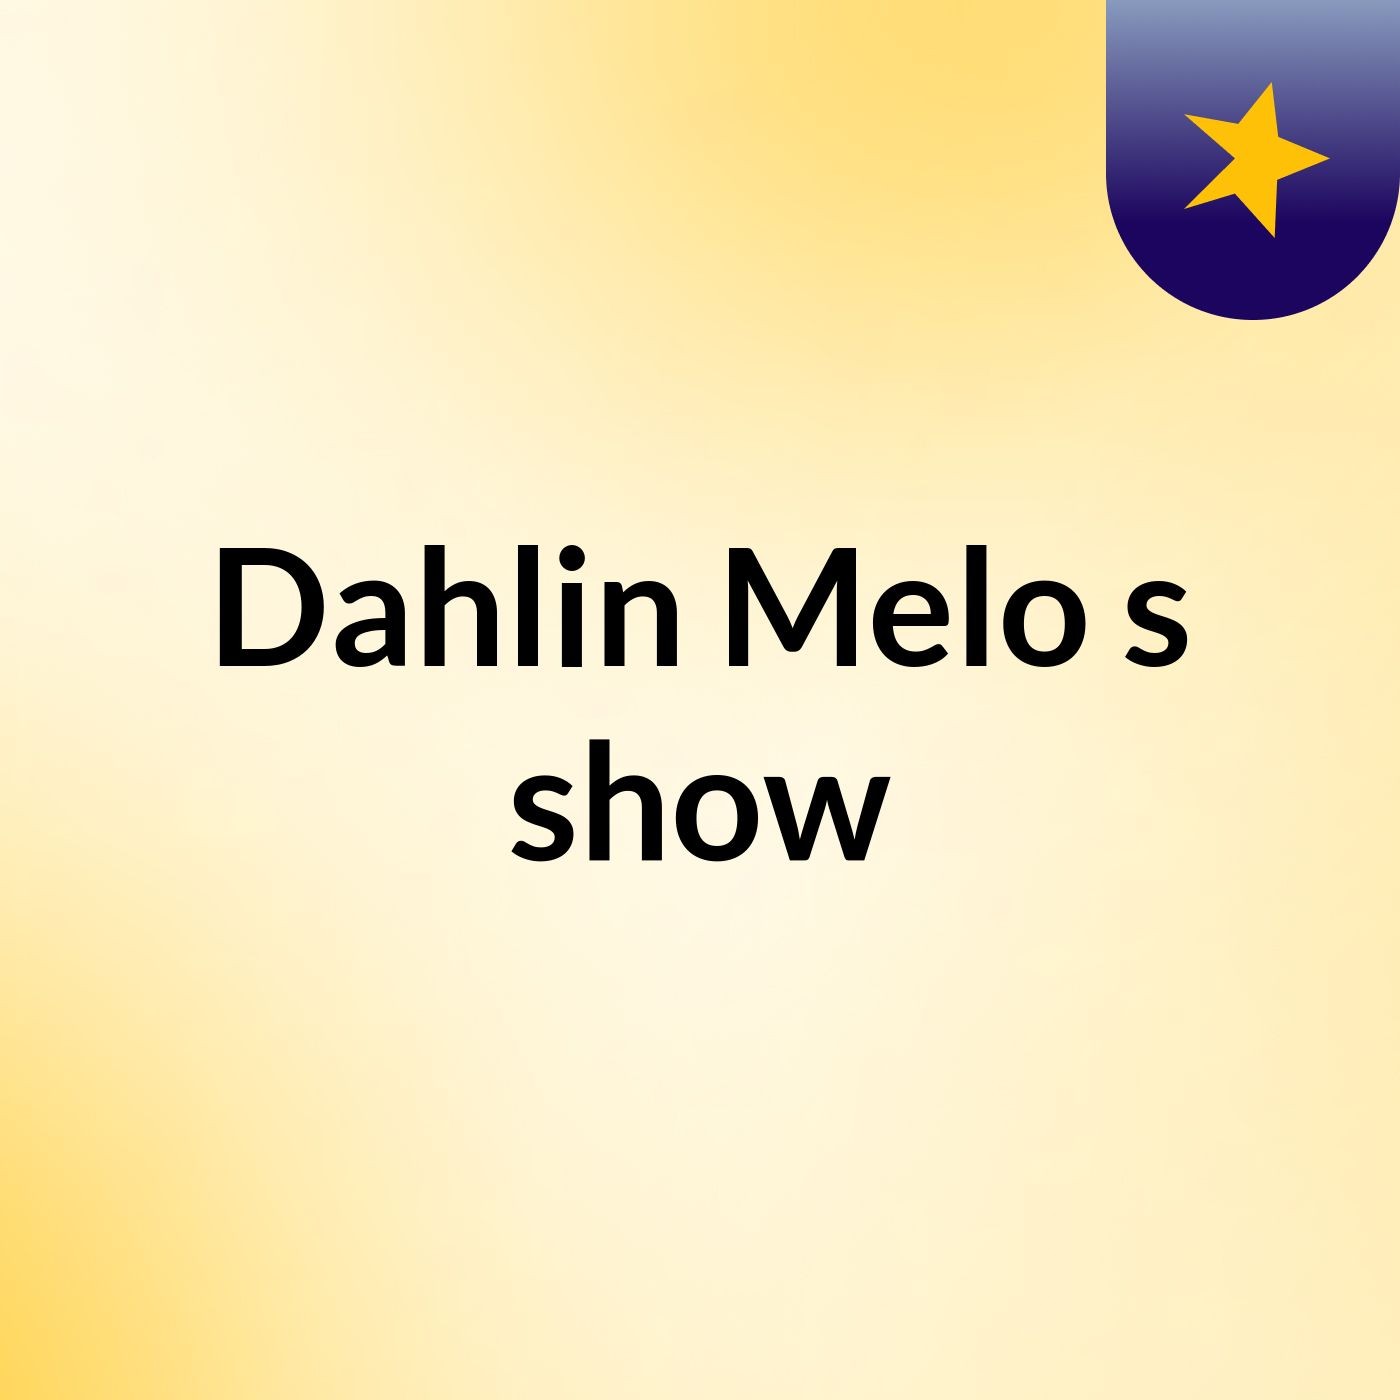 Dahlin Melo's show